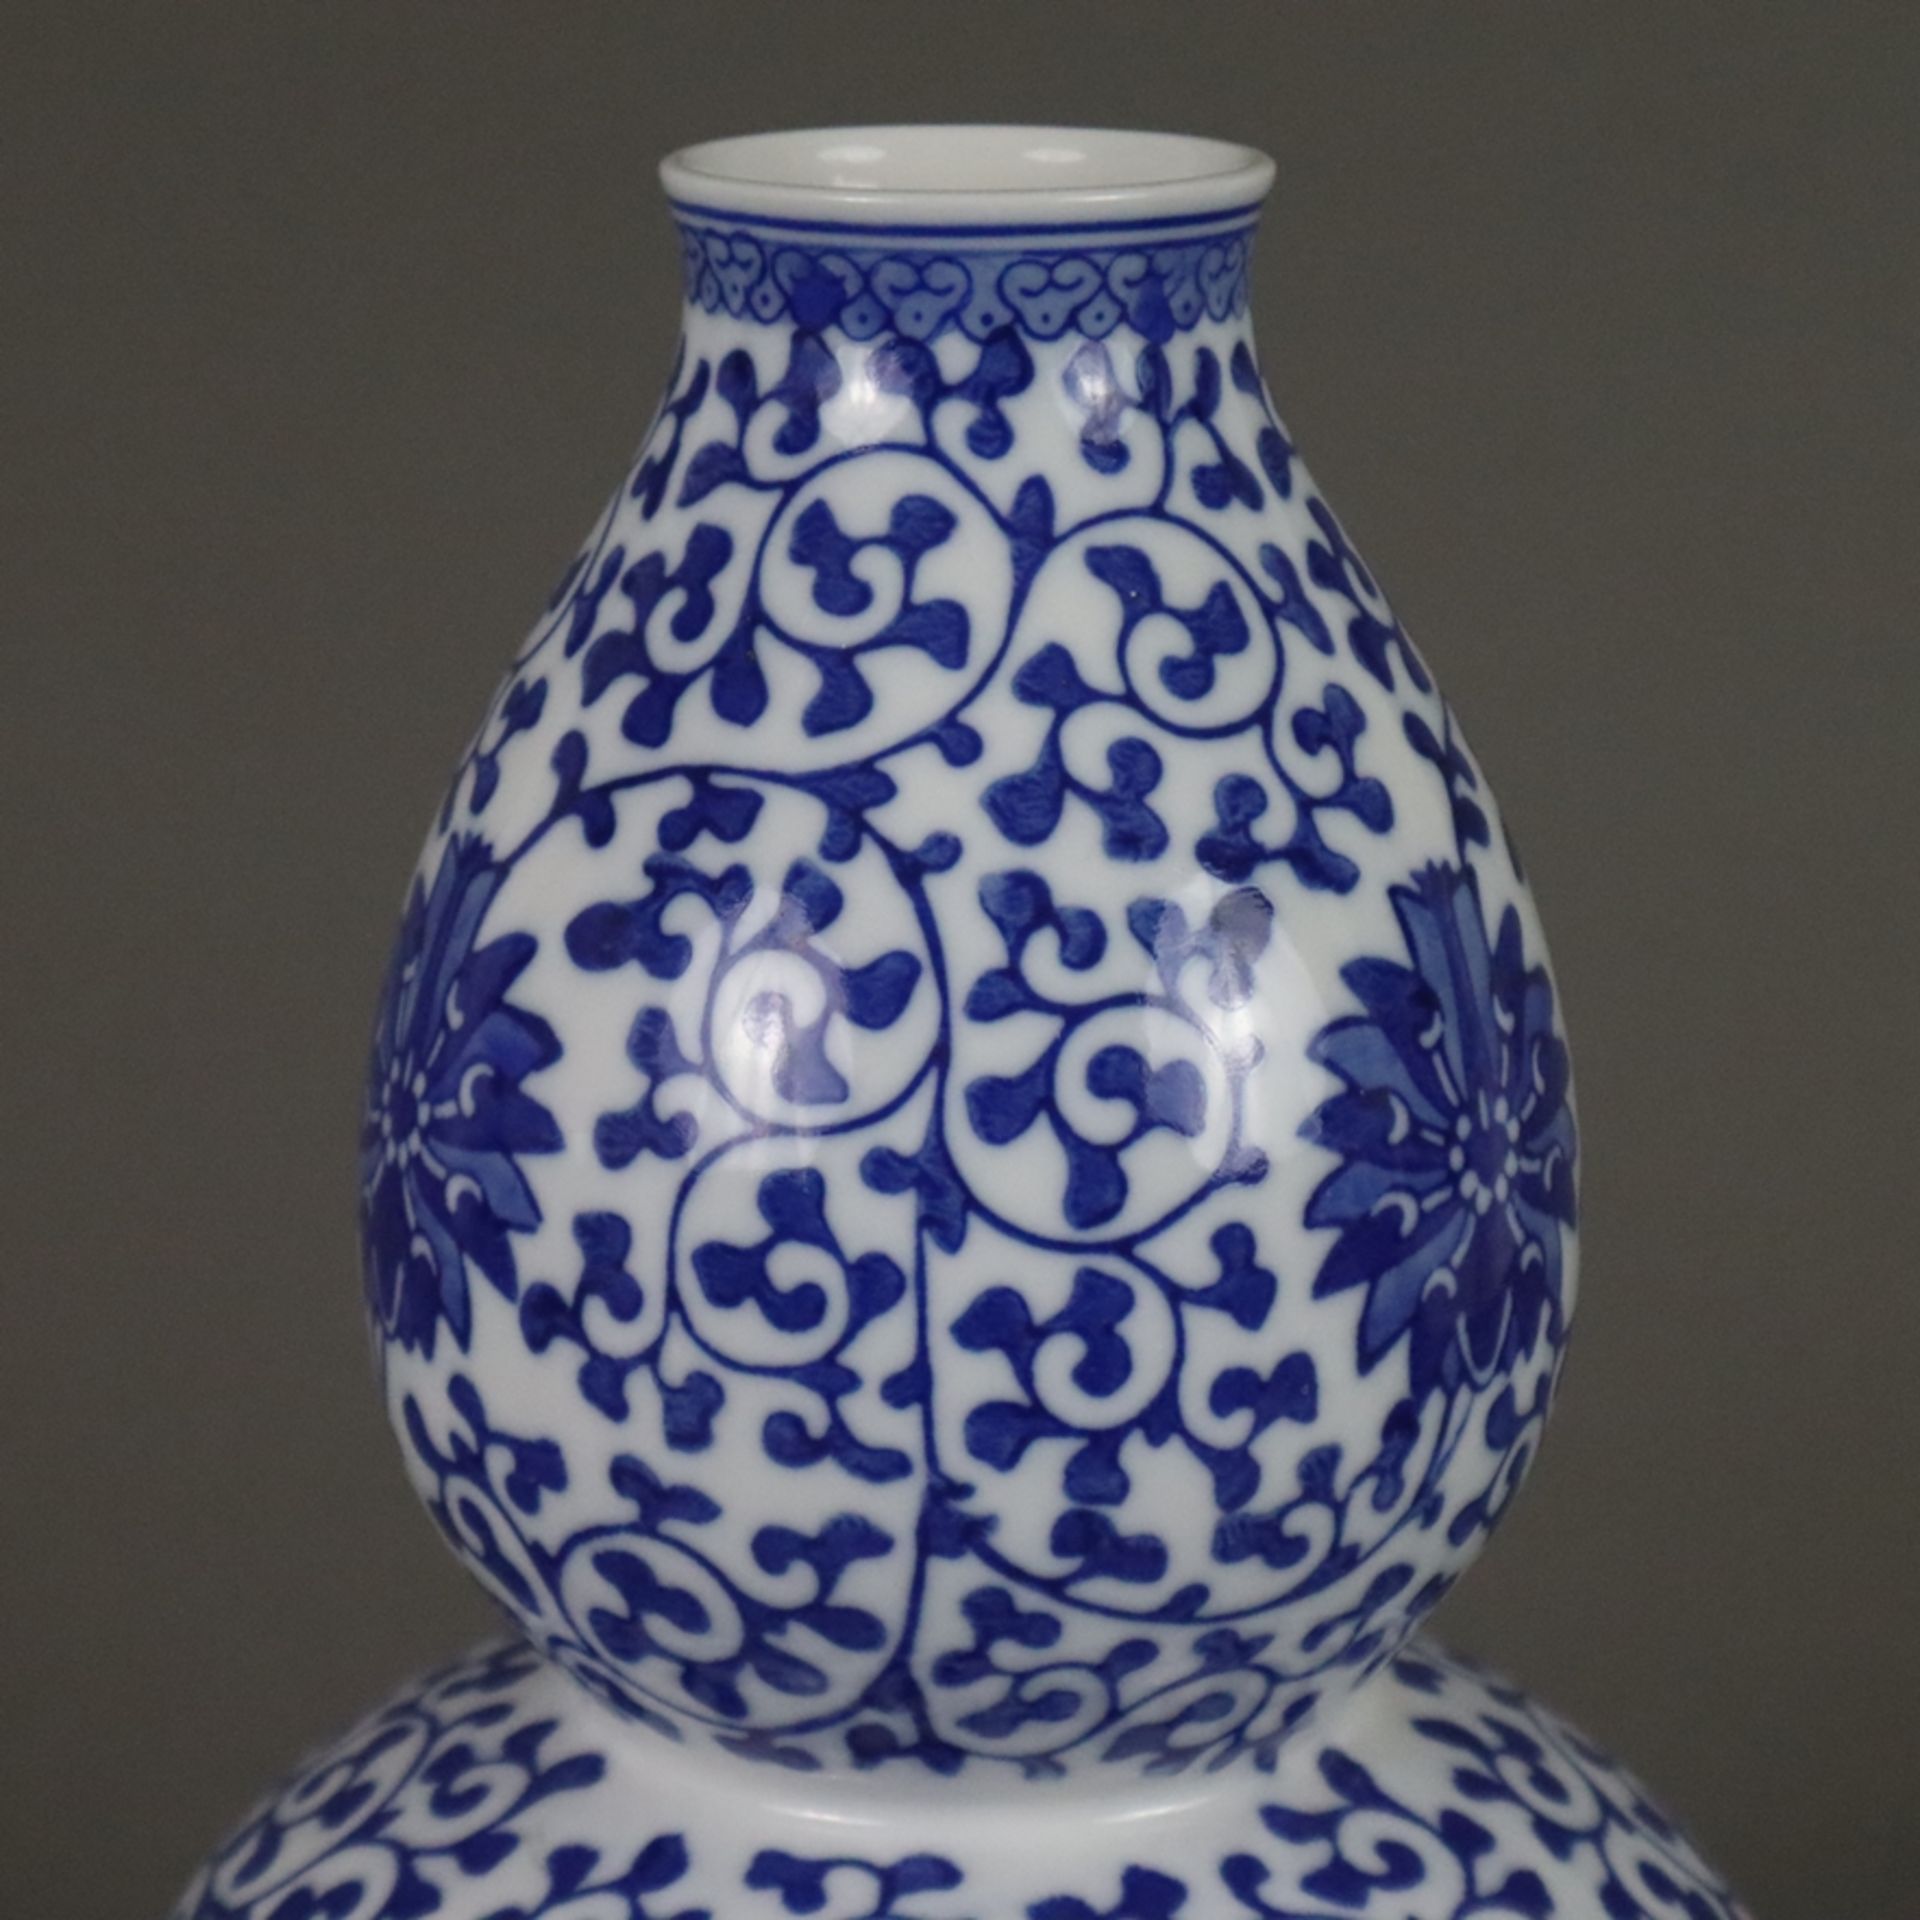 Doppelkürbisvase - China 20.Jh., Porzellan, Dekor mit mäandrierenden Lotosranken in Unterglasurblau - Image 5 of 8